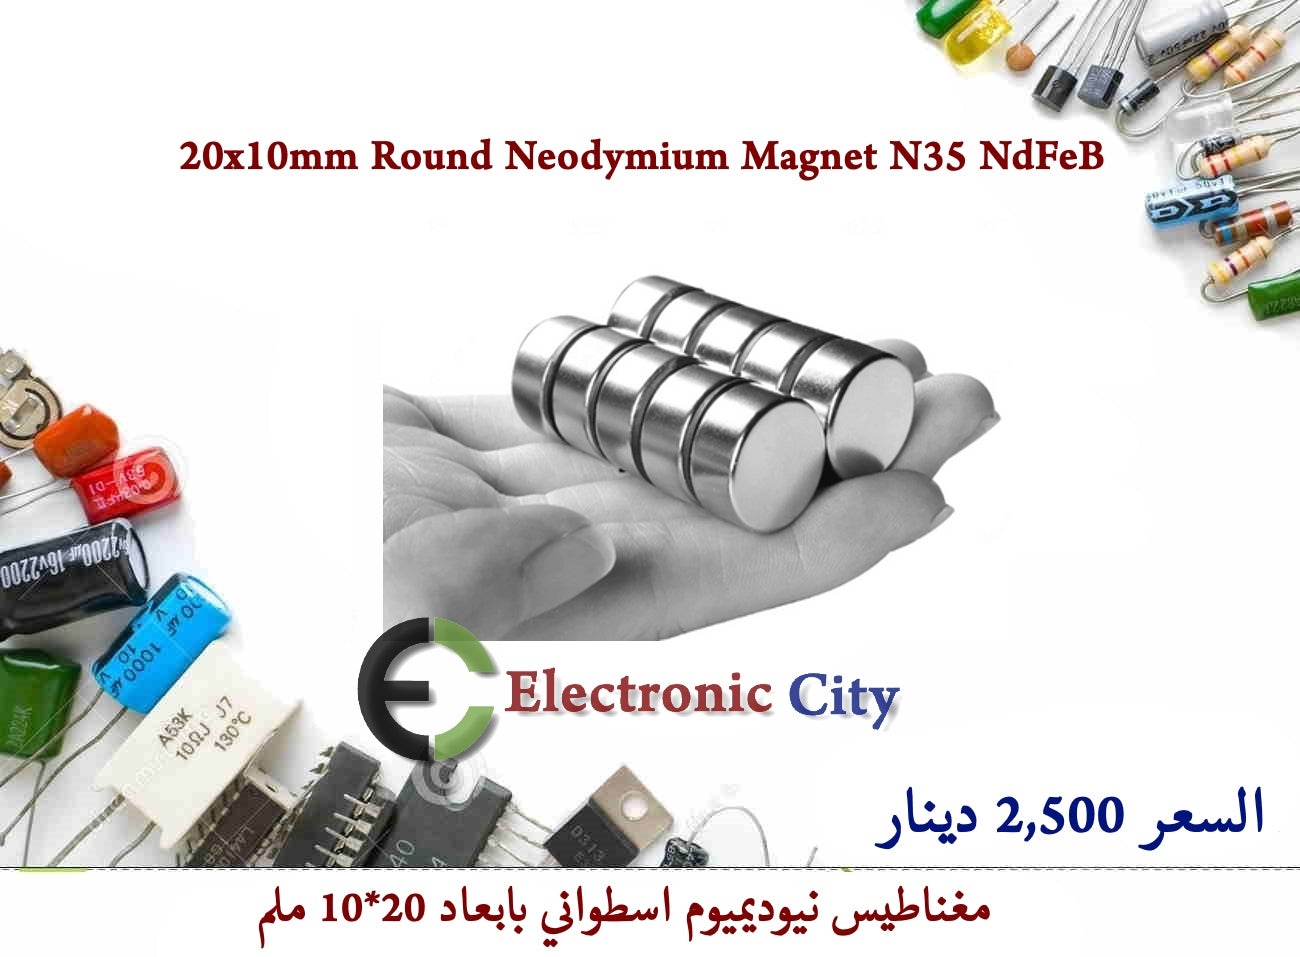 20x10mm Round Neodymium Magnet N35 NdFeB